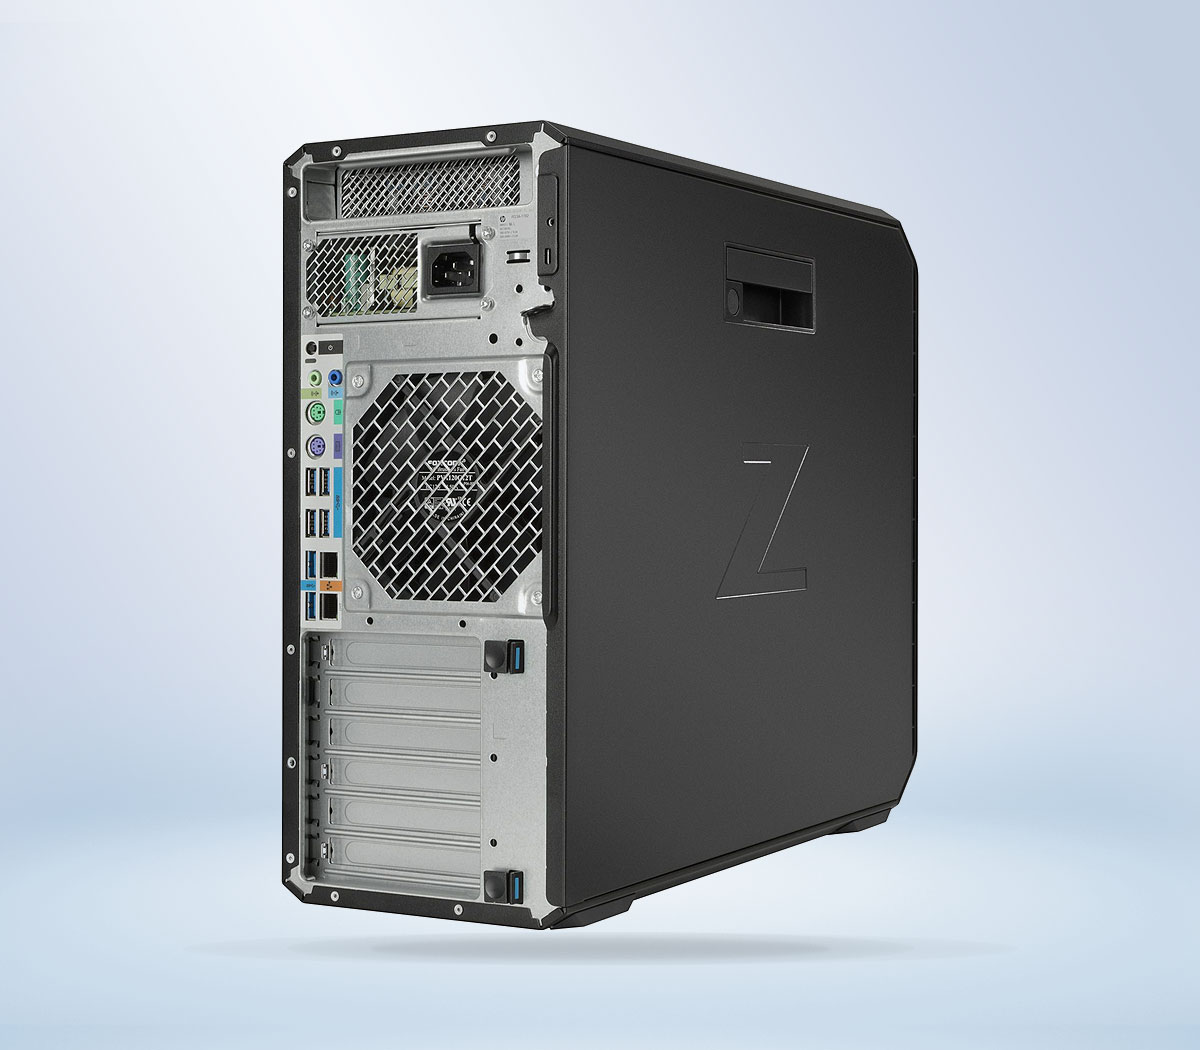 HP Z4 G4 Xeon W2235 | 8G RAM | 256G SSD | Tower Workstation